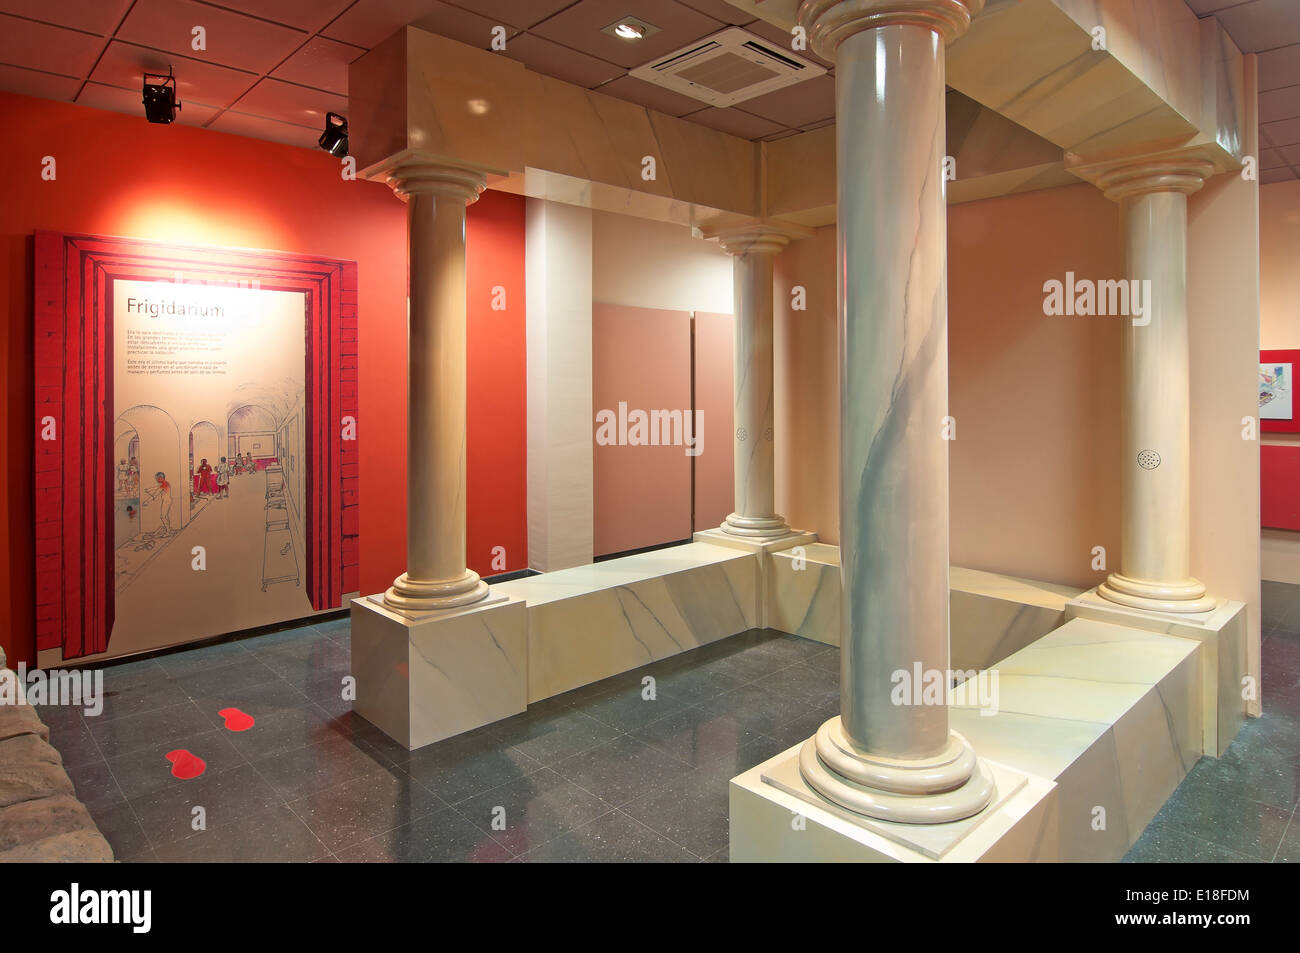 Centro tematico di bagni romani, il percorso turistico dei banditi, Alameda, provincia di Malaga, regione dell'Andalusia, Spagna, Europa Foto Stock